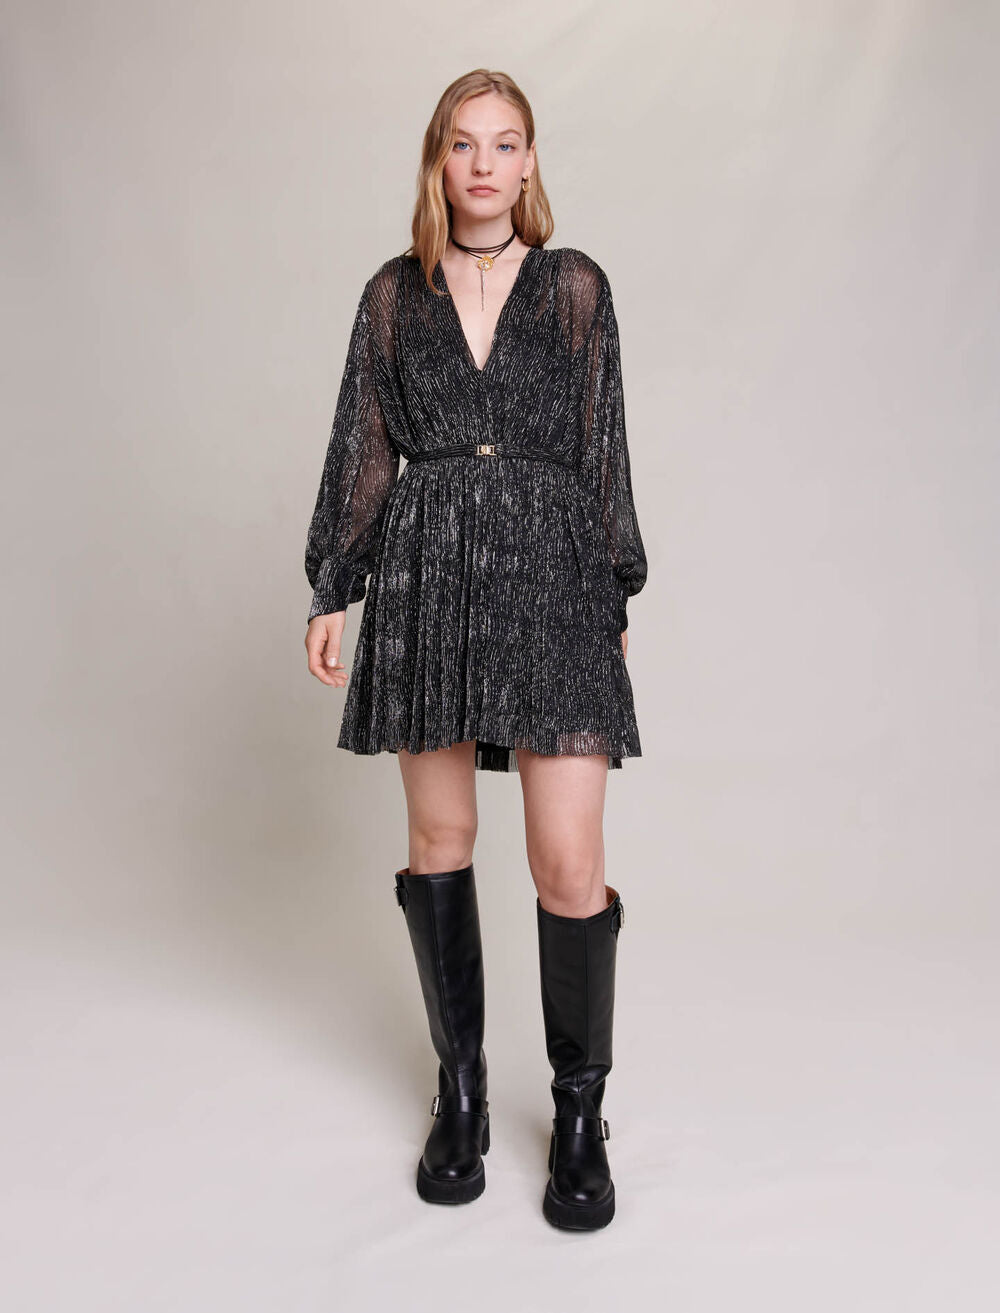 Black/Glitter featured SHORT METALLIC DRESS